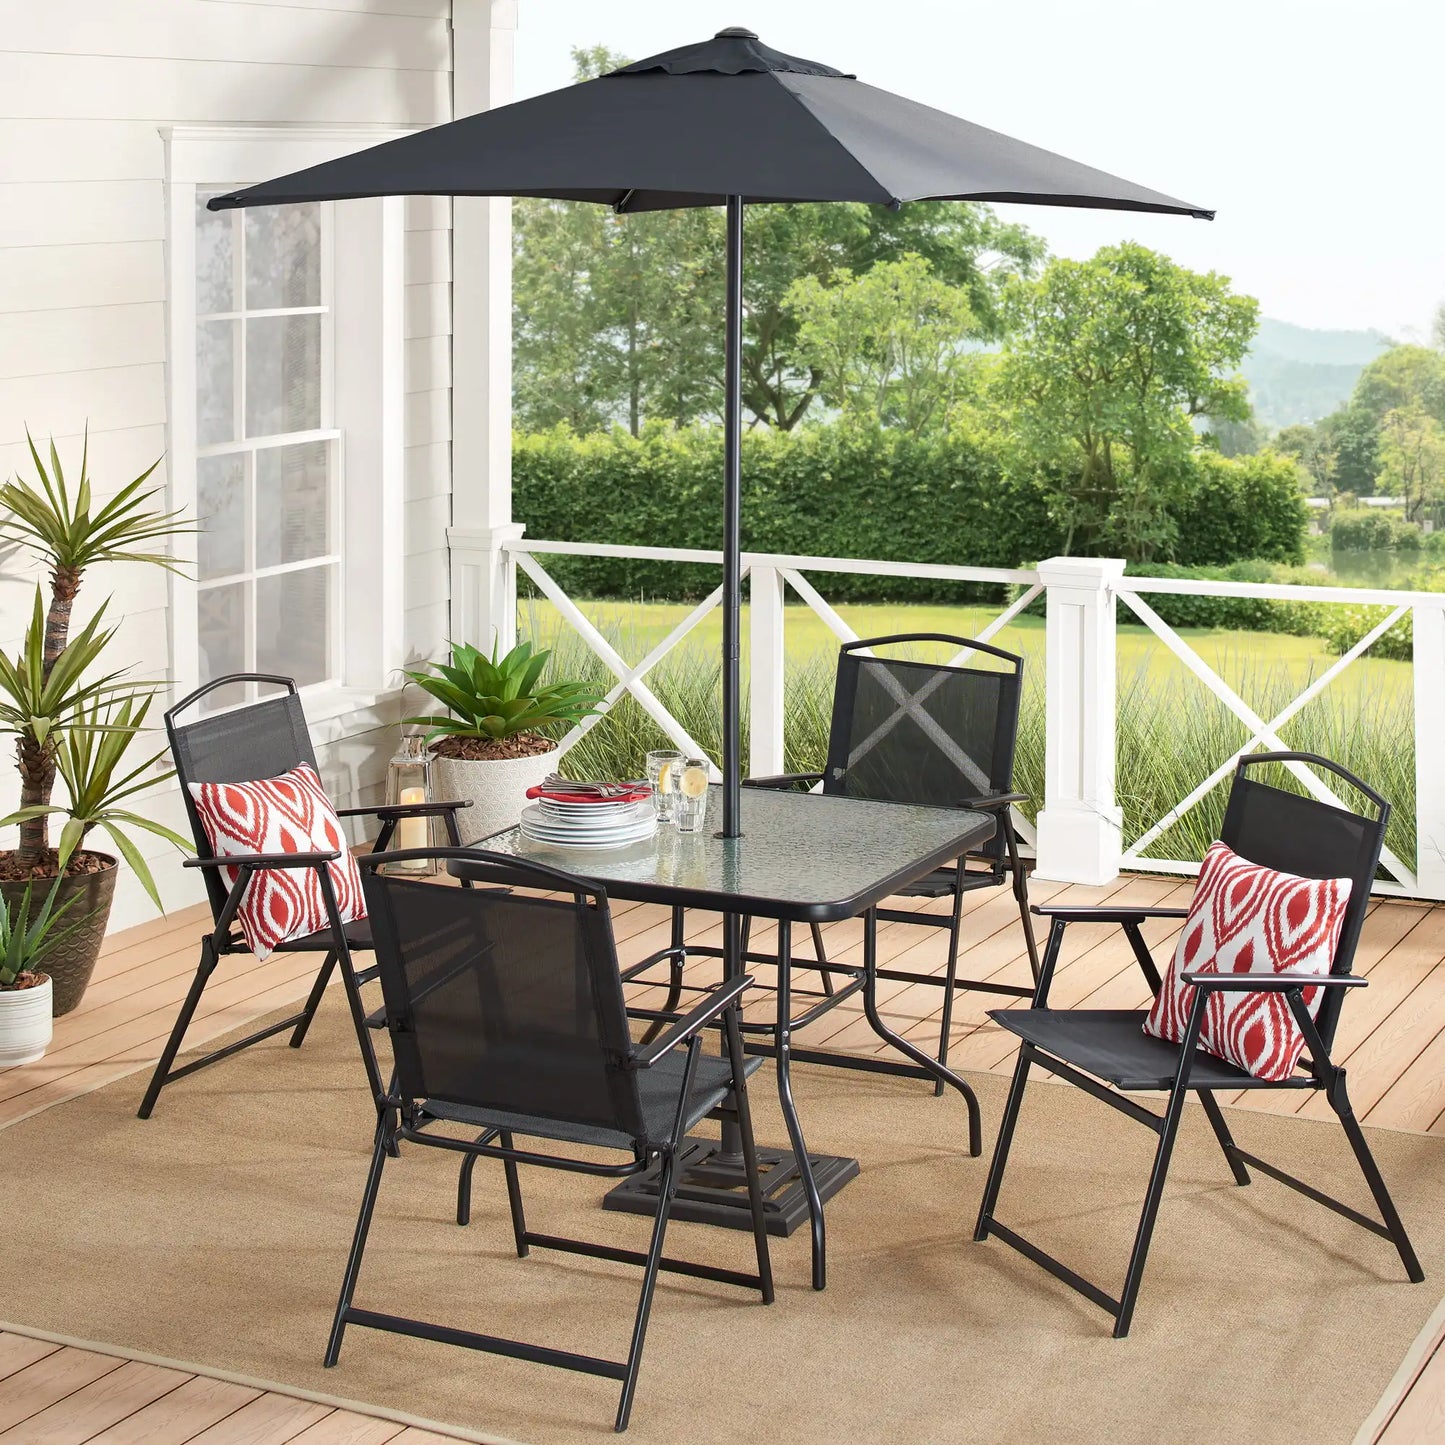 6 Piece Outdoor Patio Dining Set Garden Outdoor Furniture Set Patio Chair Table Umbrella